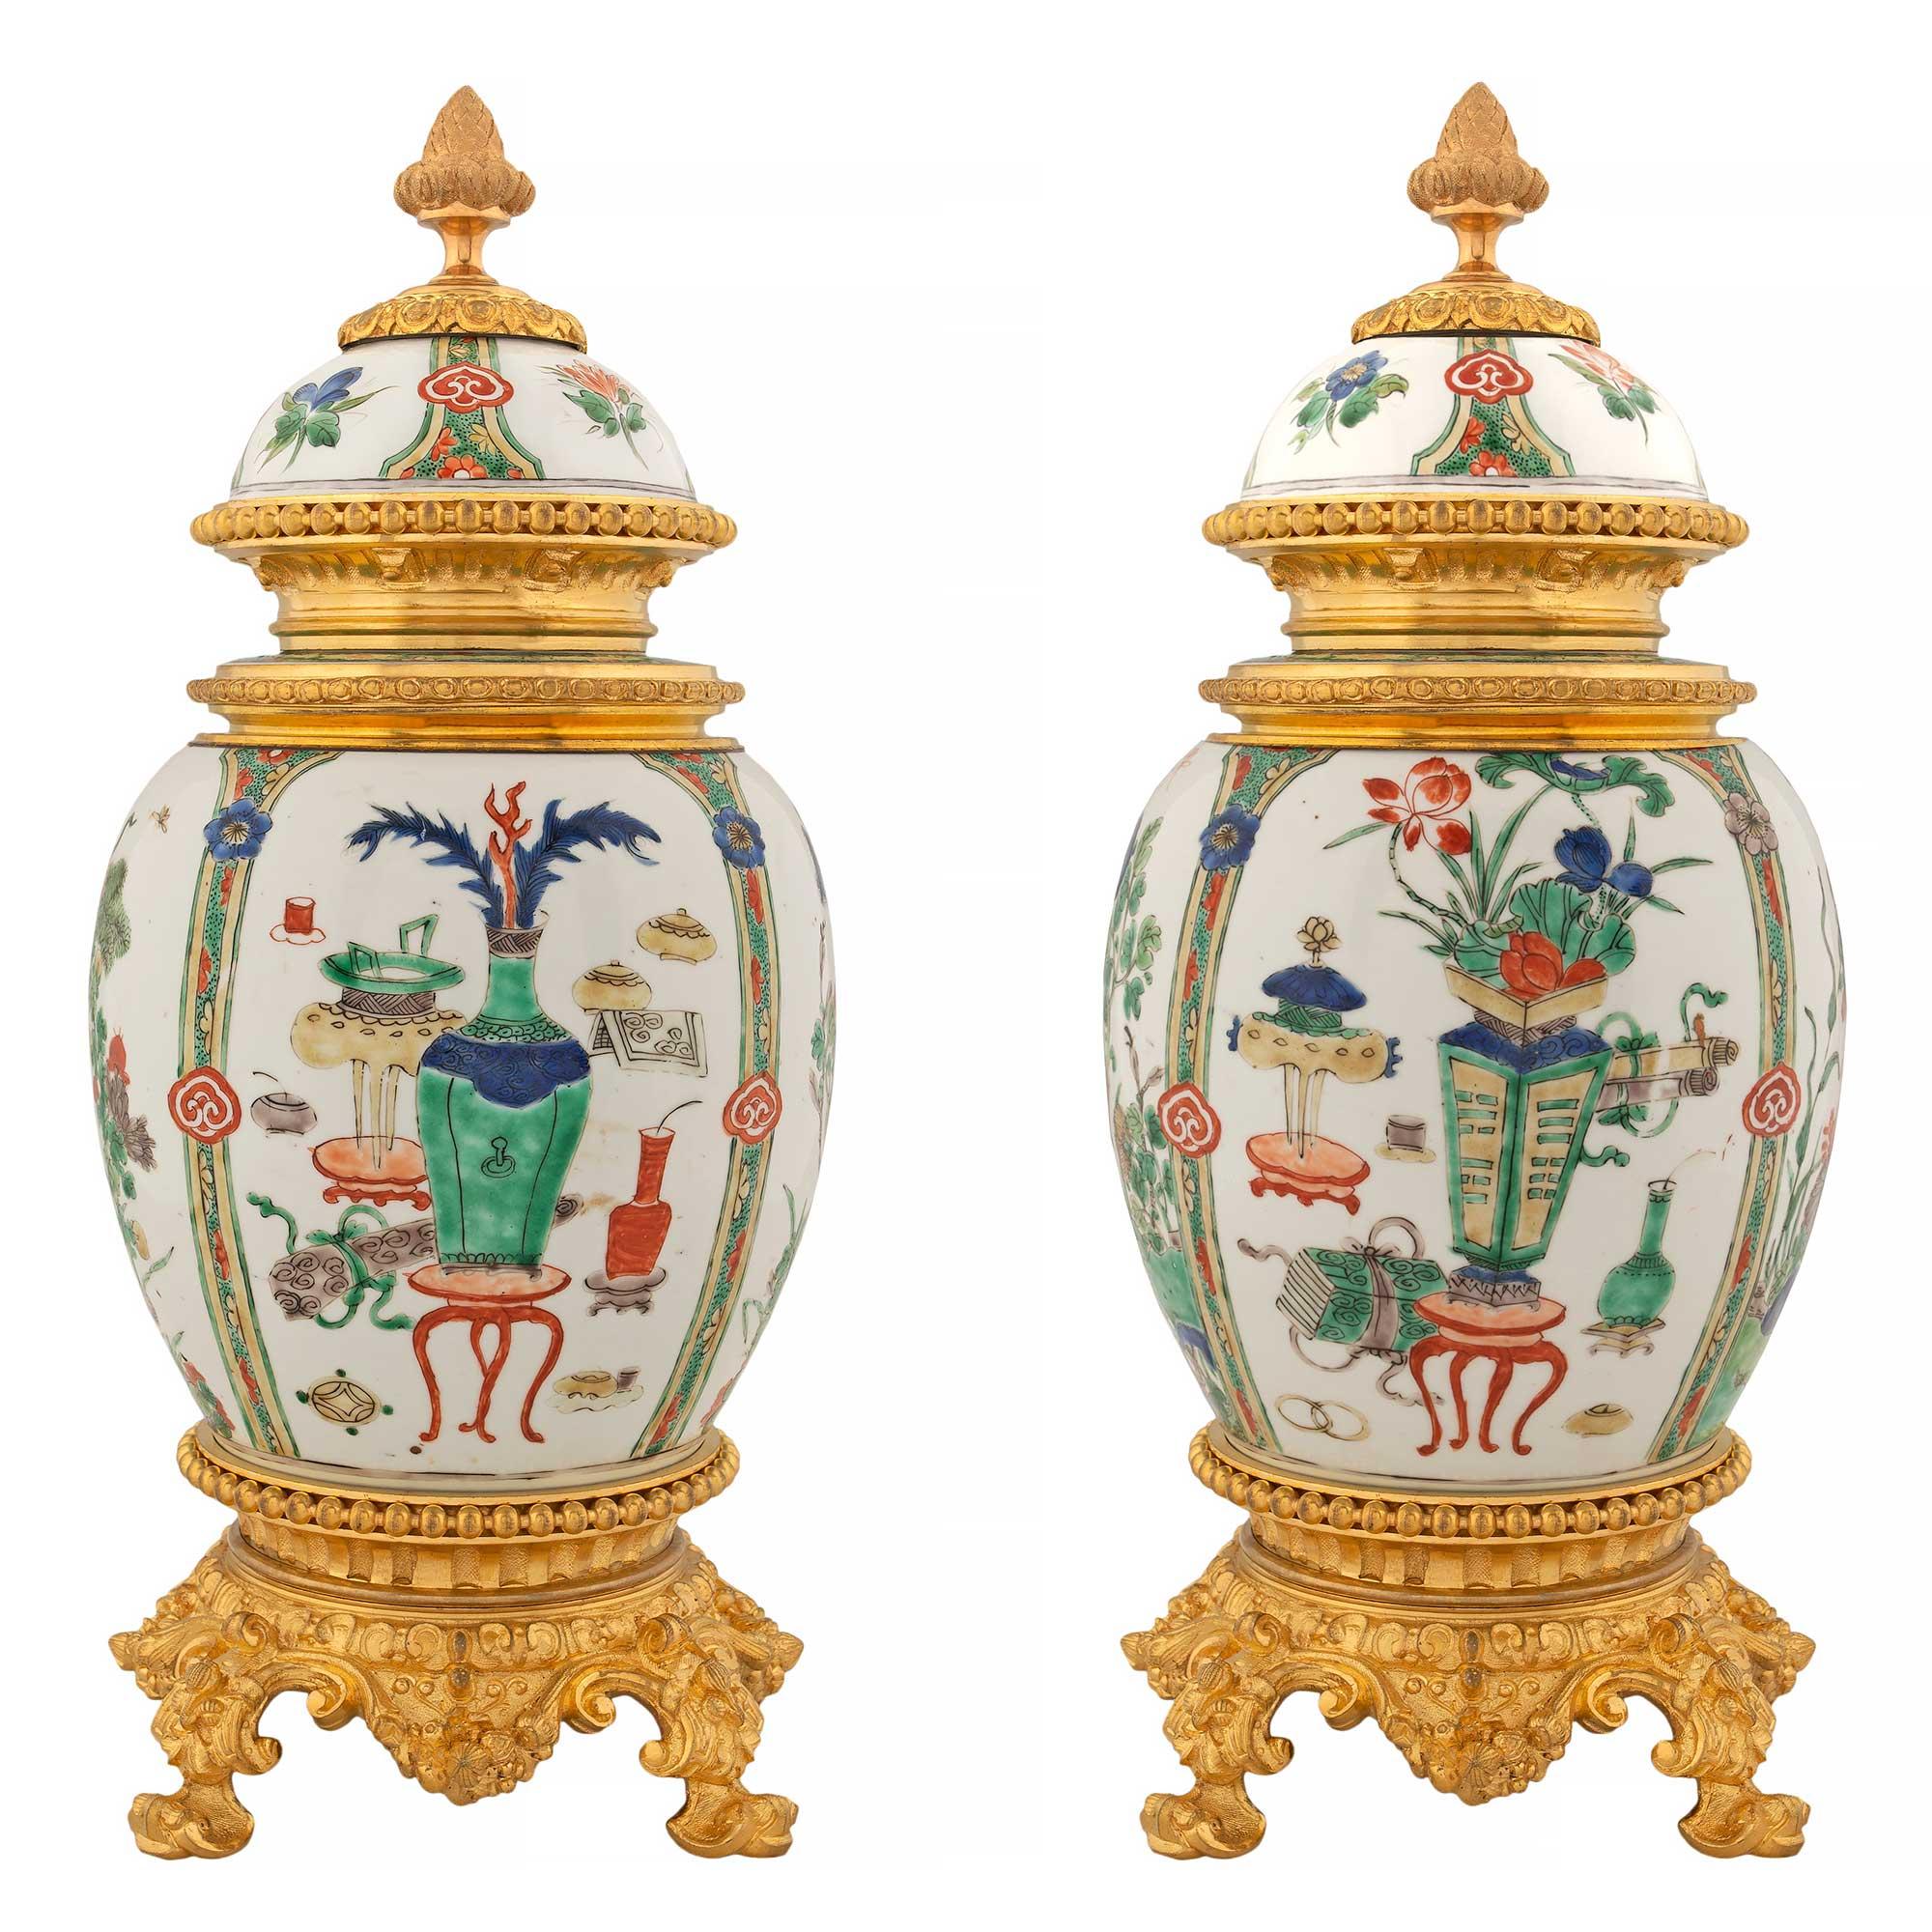 Montures en bronze doré de style Louis XVI du XIXe siècle sur urnes en porcelaine d'exportation chinoise